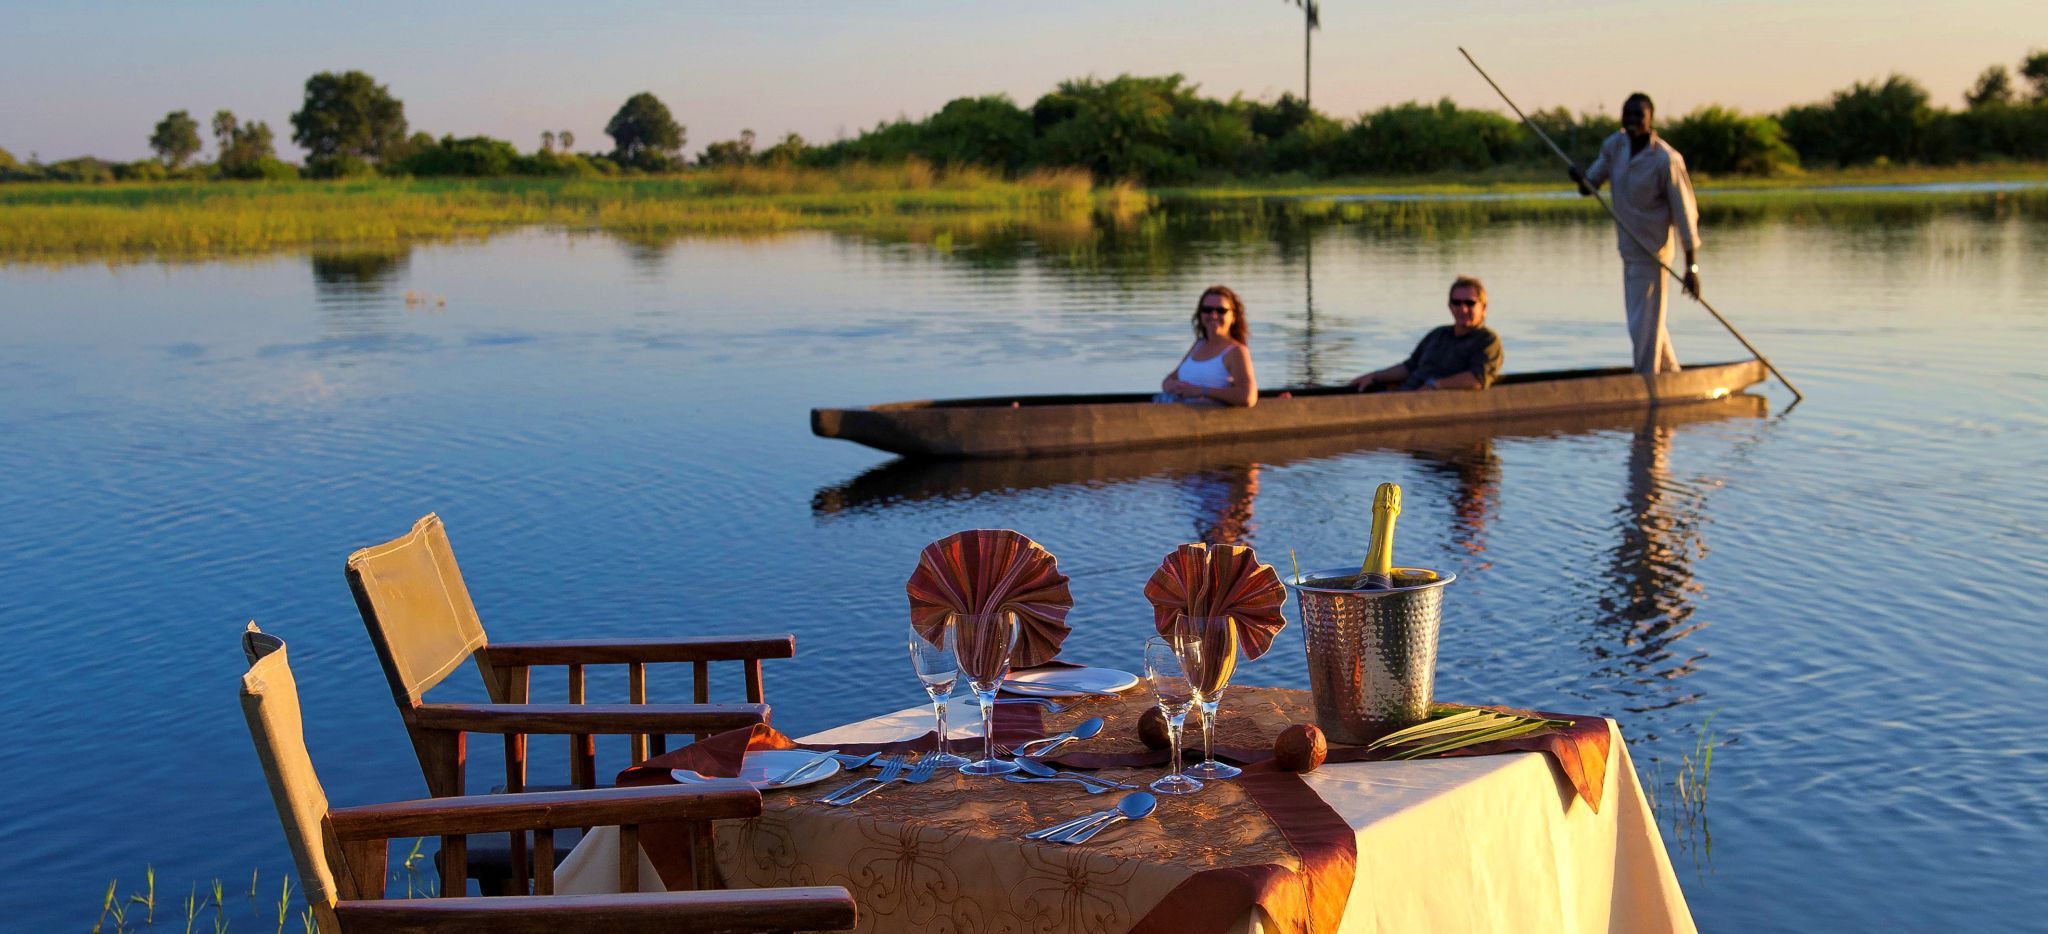 Paar mit Guide in Kanu, am Ufer ist ein Tisch für zwei gedeckt